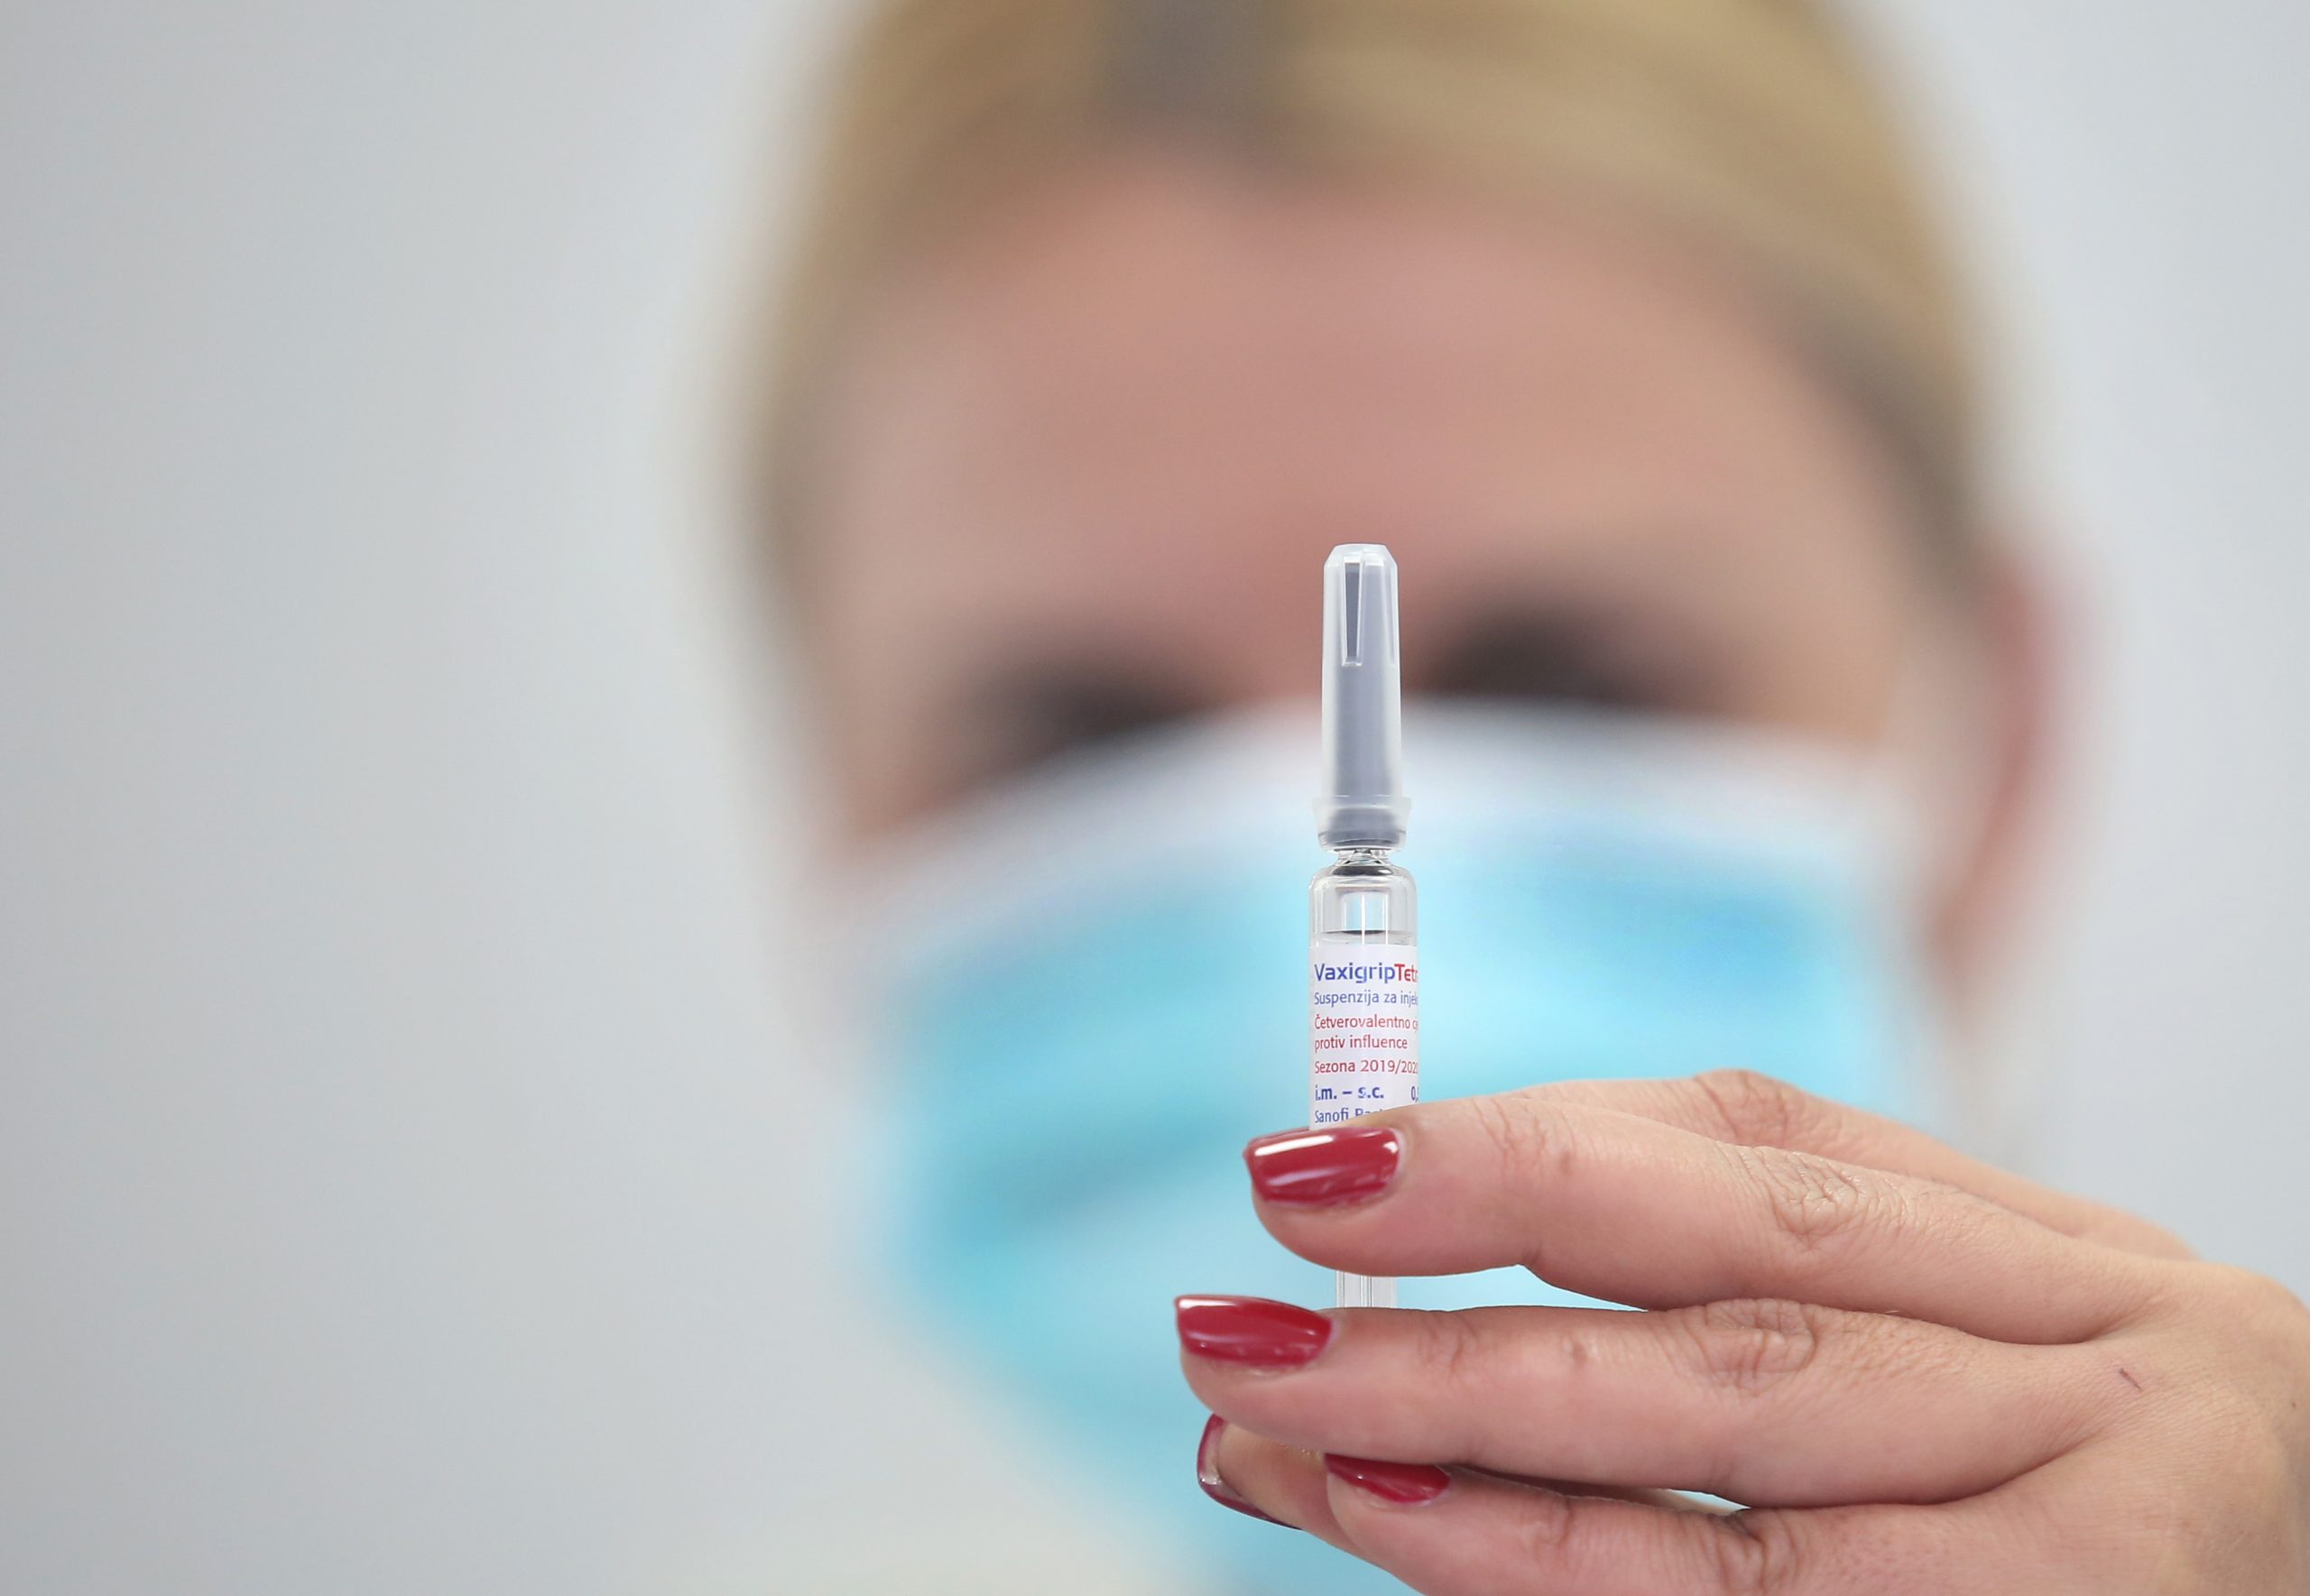 06.11.2019., Sibenik - U prostoru Zavoda za javno zdravstvo pocelo je cjepljenje protiv gripe. Ove je godine nabavljeno cetverovalentno cjepivo VaxigripTetra koje sadrzi cetiri podtipa virusa i to virusa A (H1N1 i H3N2) i dva podtipa virusa B. 
Photo: Dusko Jaramaz/PIXSELL